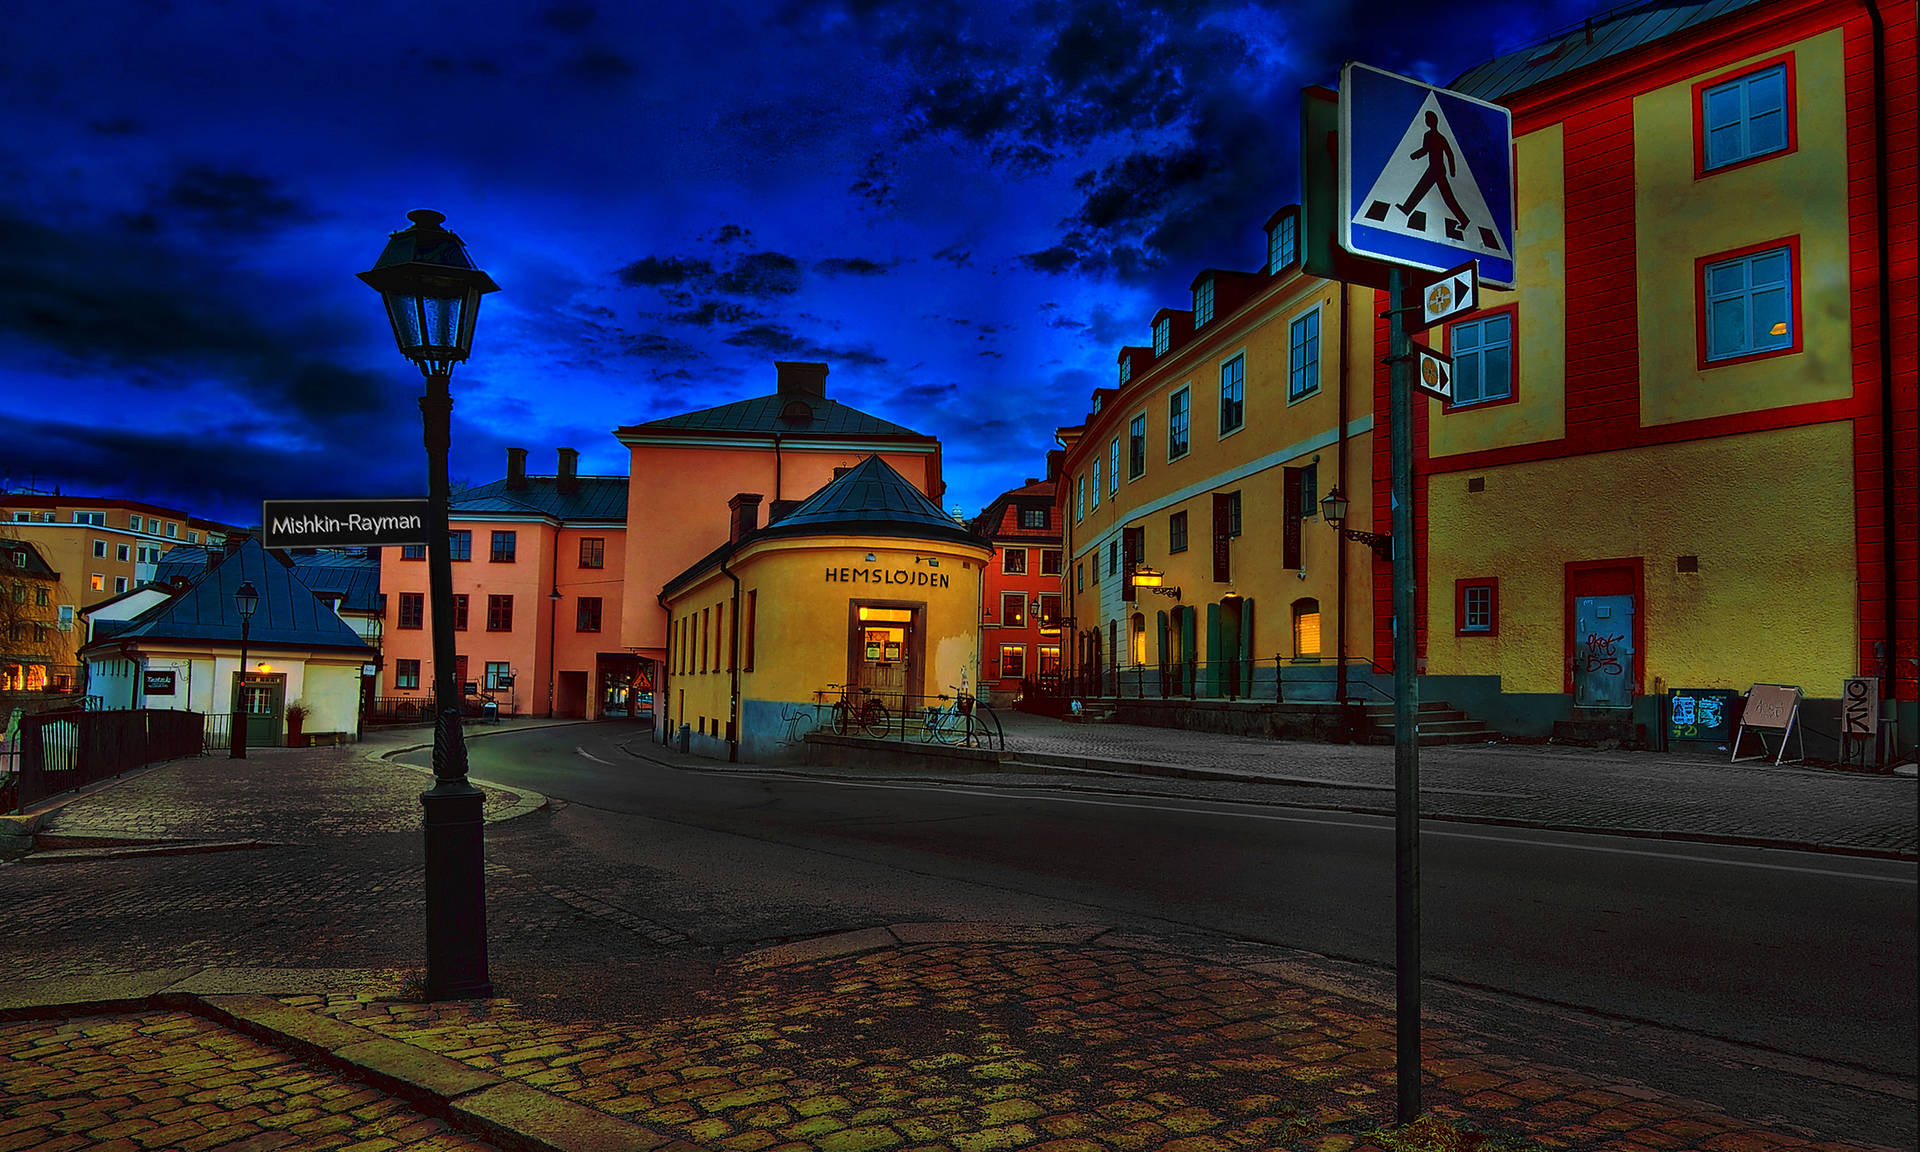 Sverige Uppsala City Wallpaper